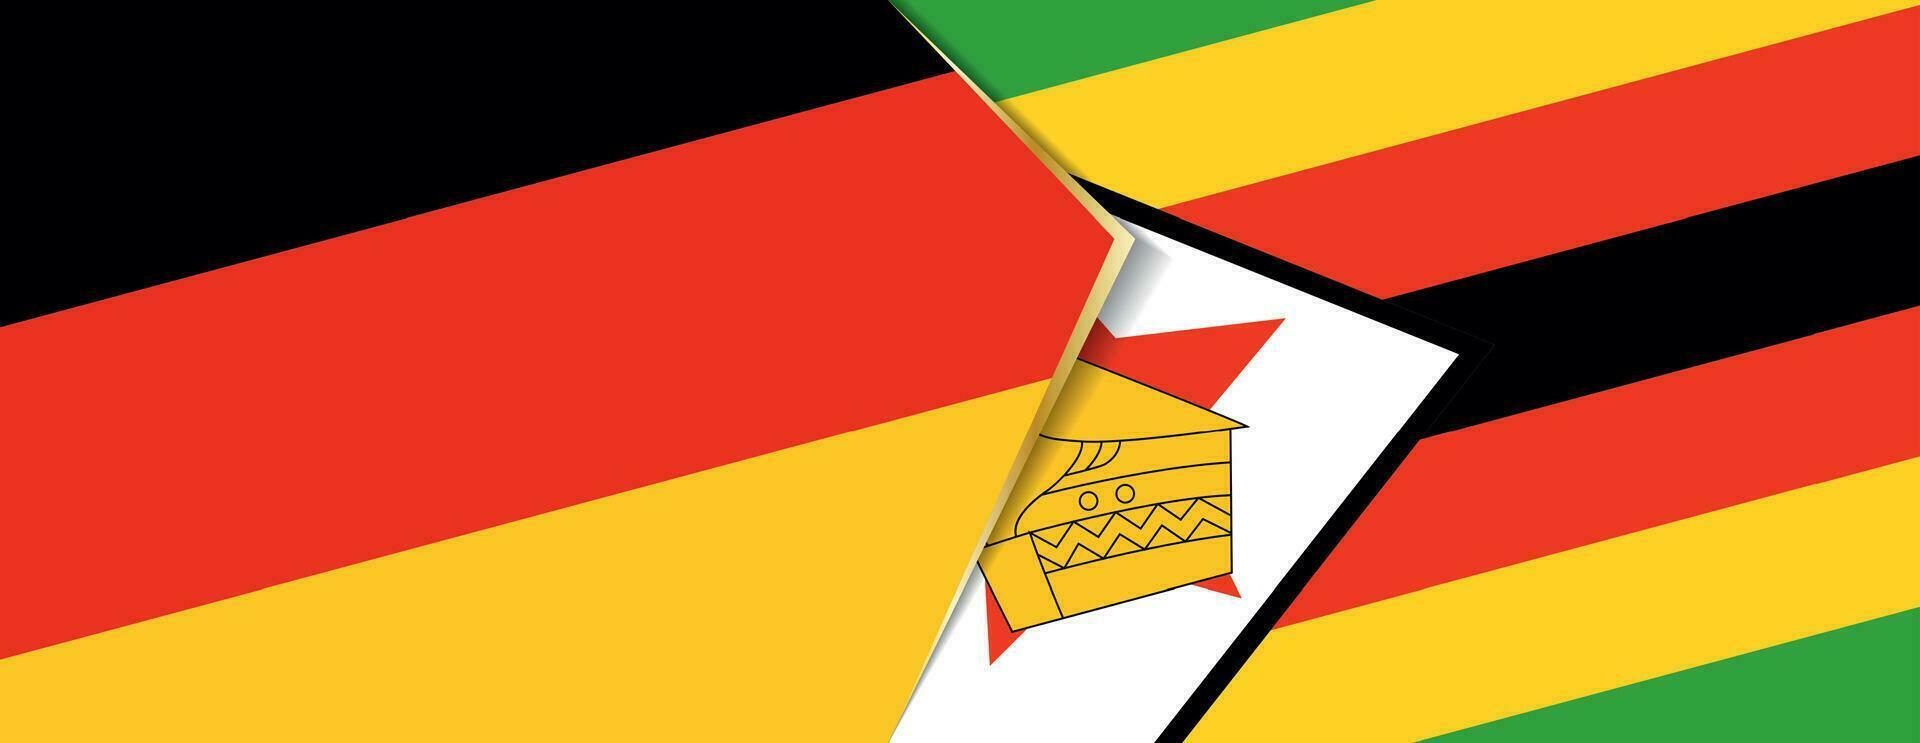 Deutschland und Zimbabwe Flaggen, zwei Vektor Flaggen.